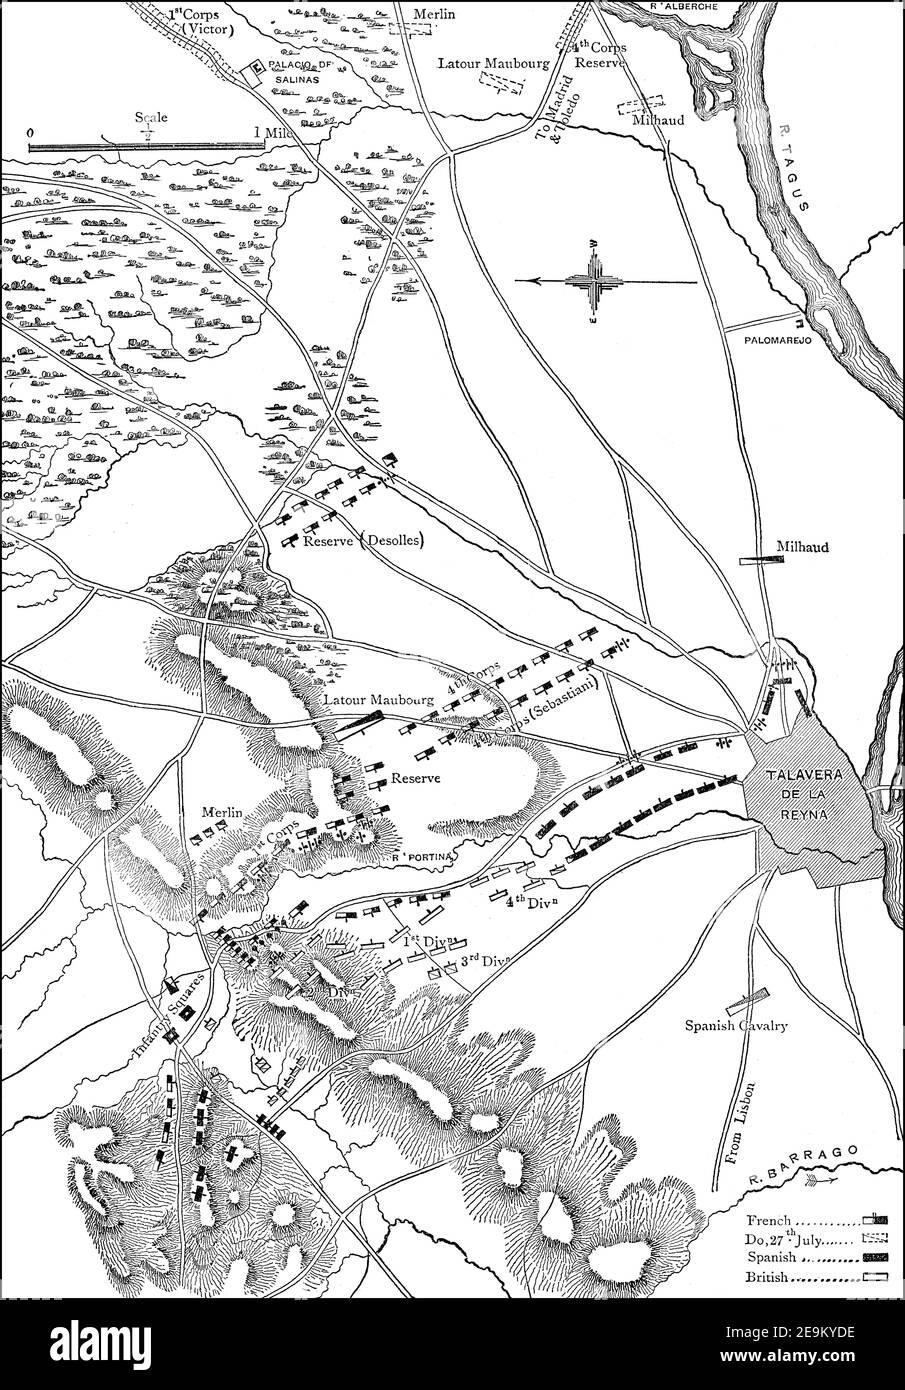 La Battaglia di Talavera, 28 luglio 1809, Talavera de la Reina, Spagna, Guerra Peninsulare, dalle battaglie britanniche su terra e mare di James Grant Foto Stock